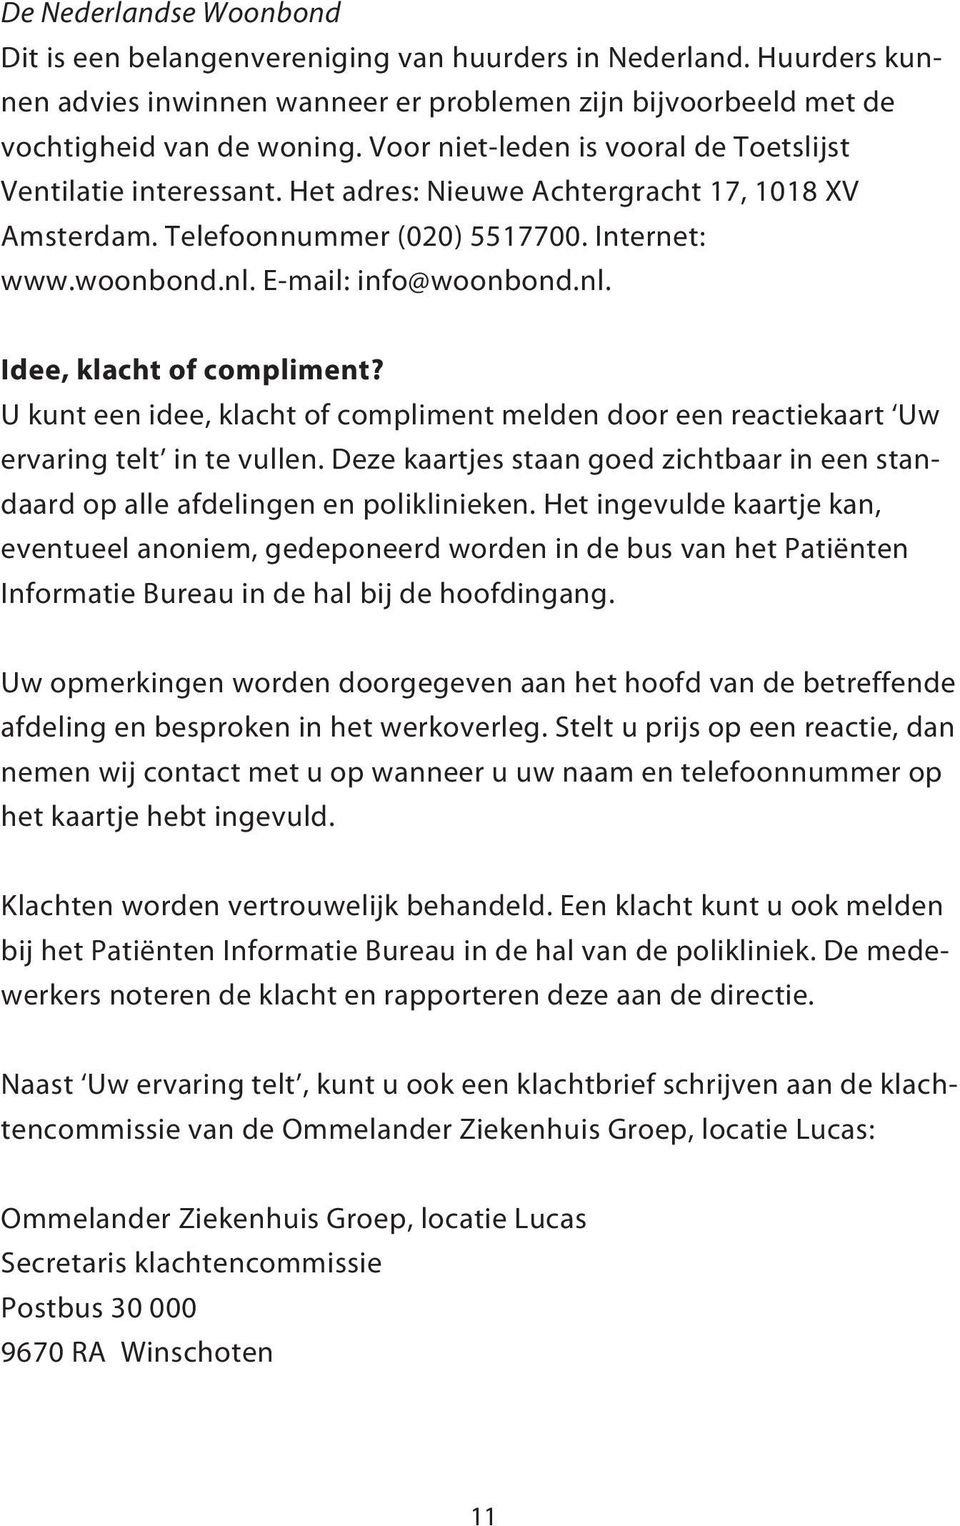 E-mail: info@woonbond.nl. Idee, klacht of compliment? U kunt een idee, klacht of compliment melden door een reactiekaart Uw ervaring telt in te vullen.